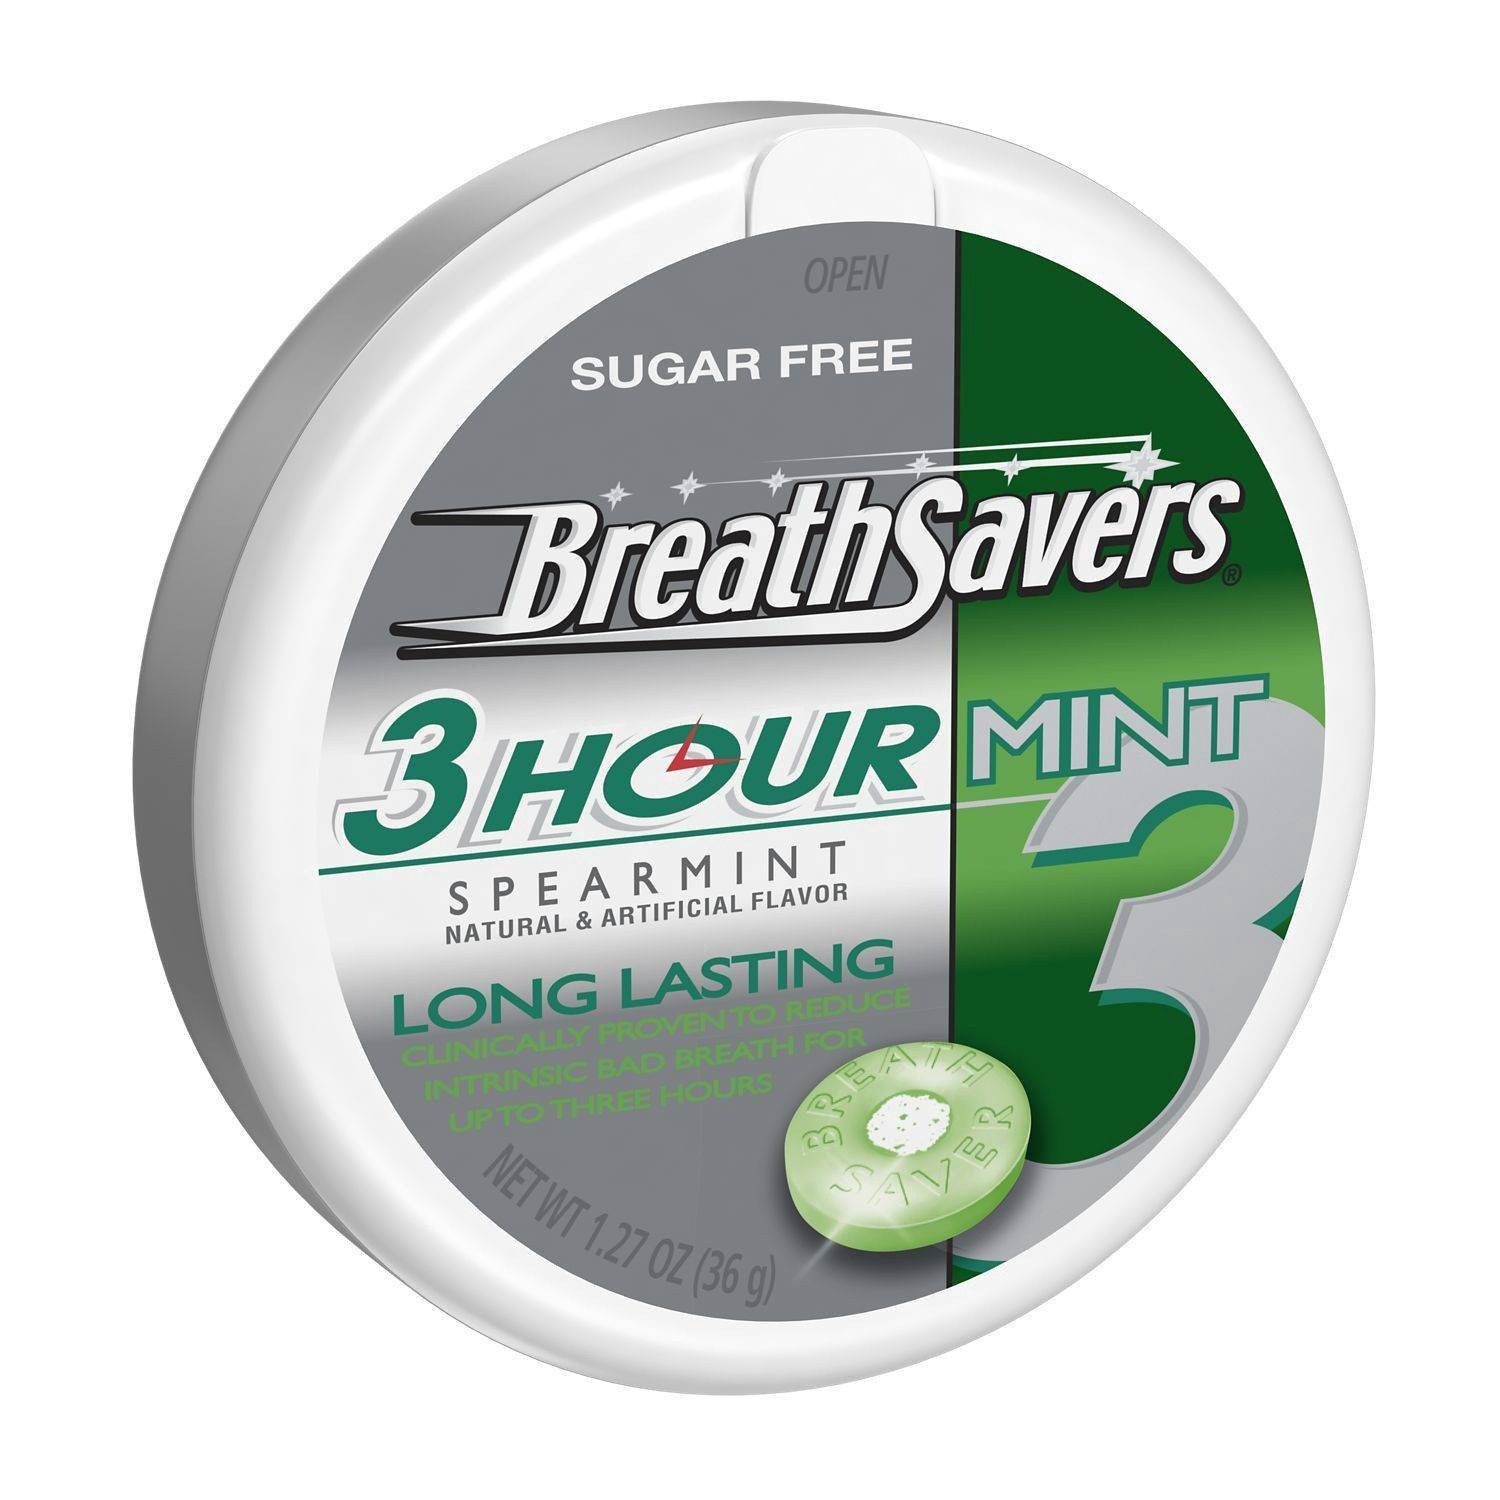 slide 1 of 3, Breath Savers Spearmint 3 Hour Mint Candies - 1.27oz, 1.27 oz